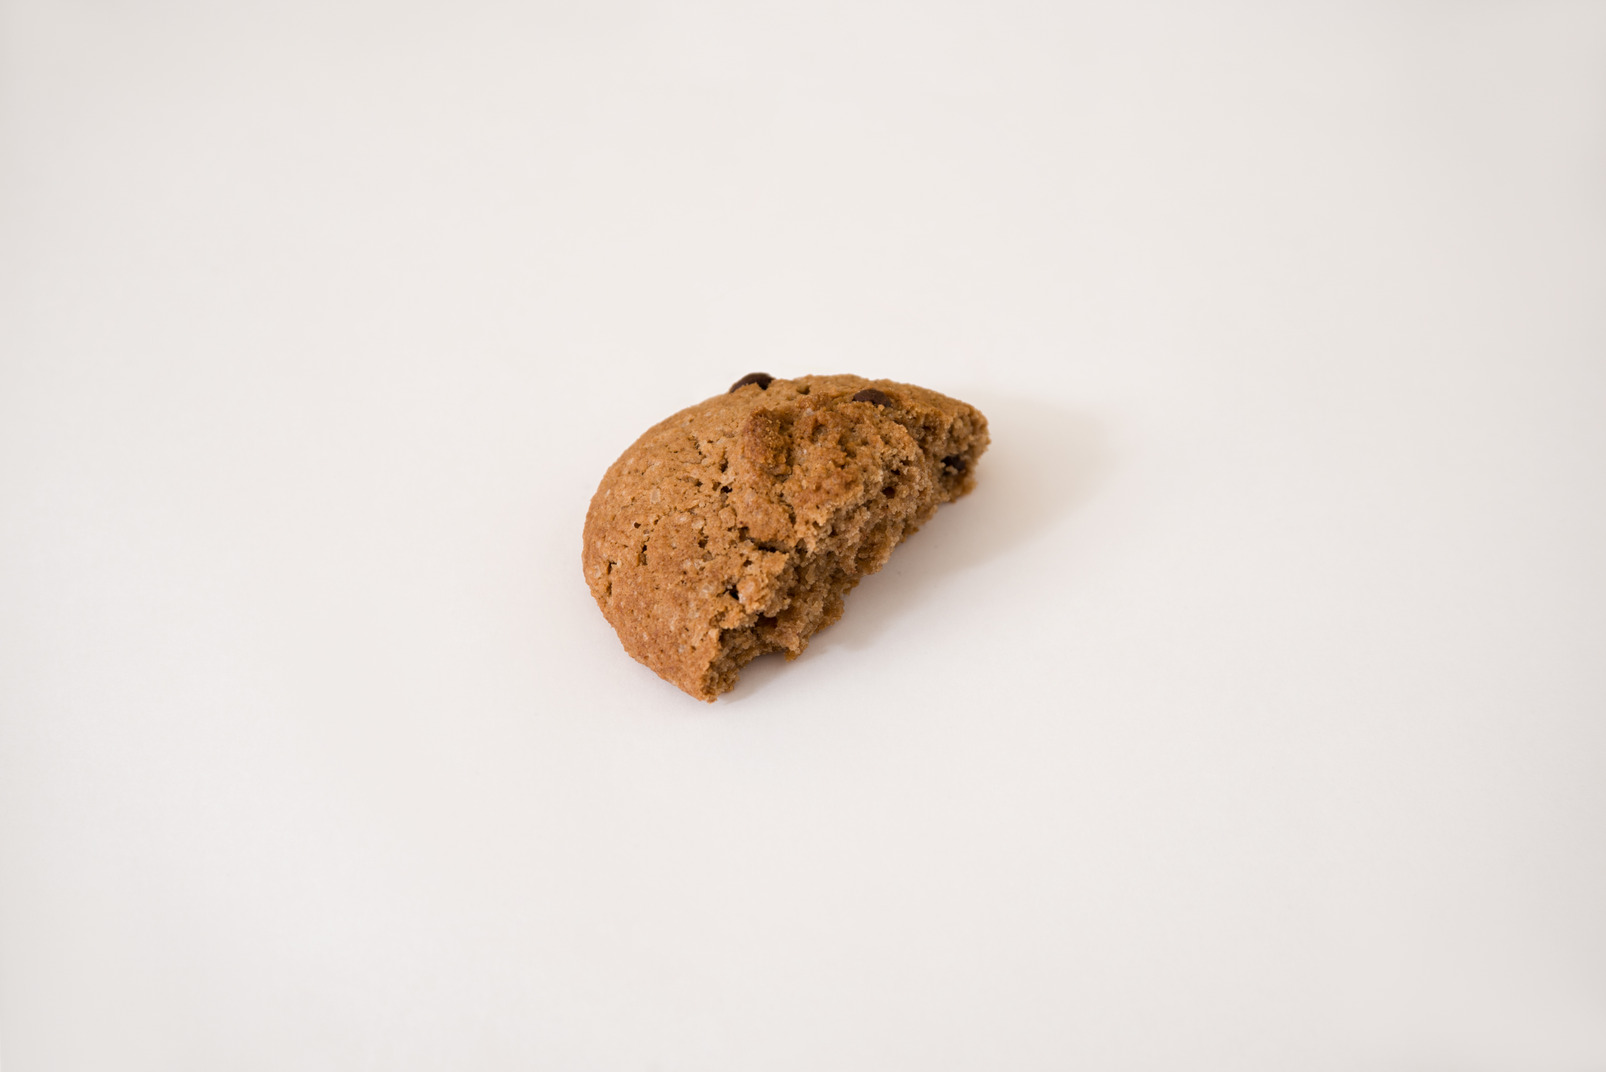 Half eaten oatmel cookie